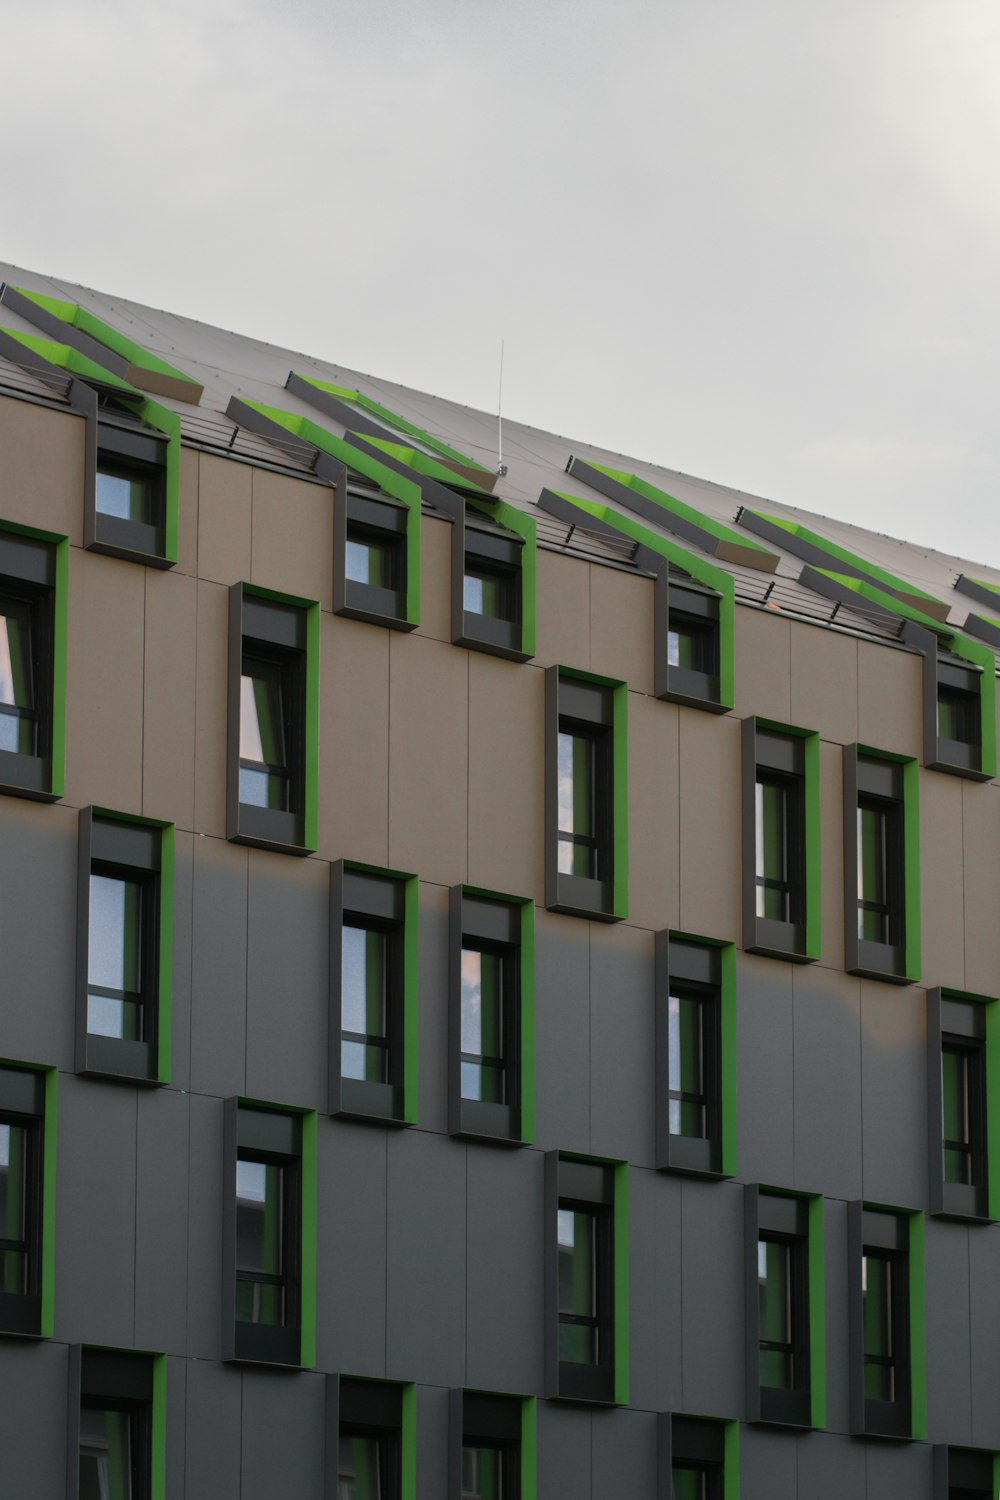 창문이 많고 녹색 장식이있는 고층 건물